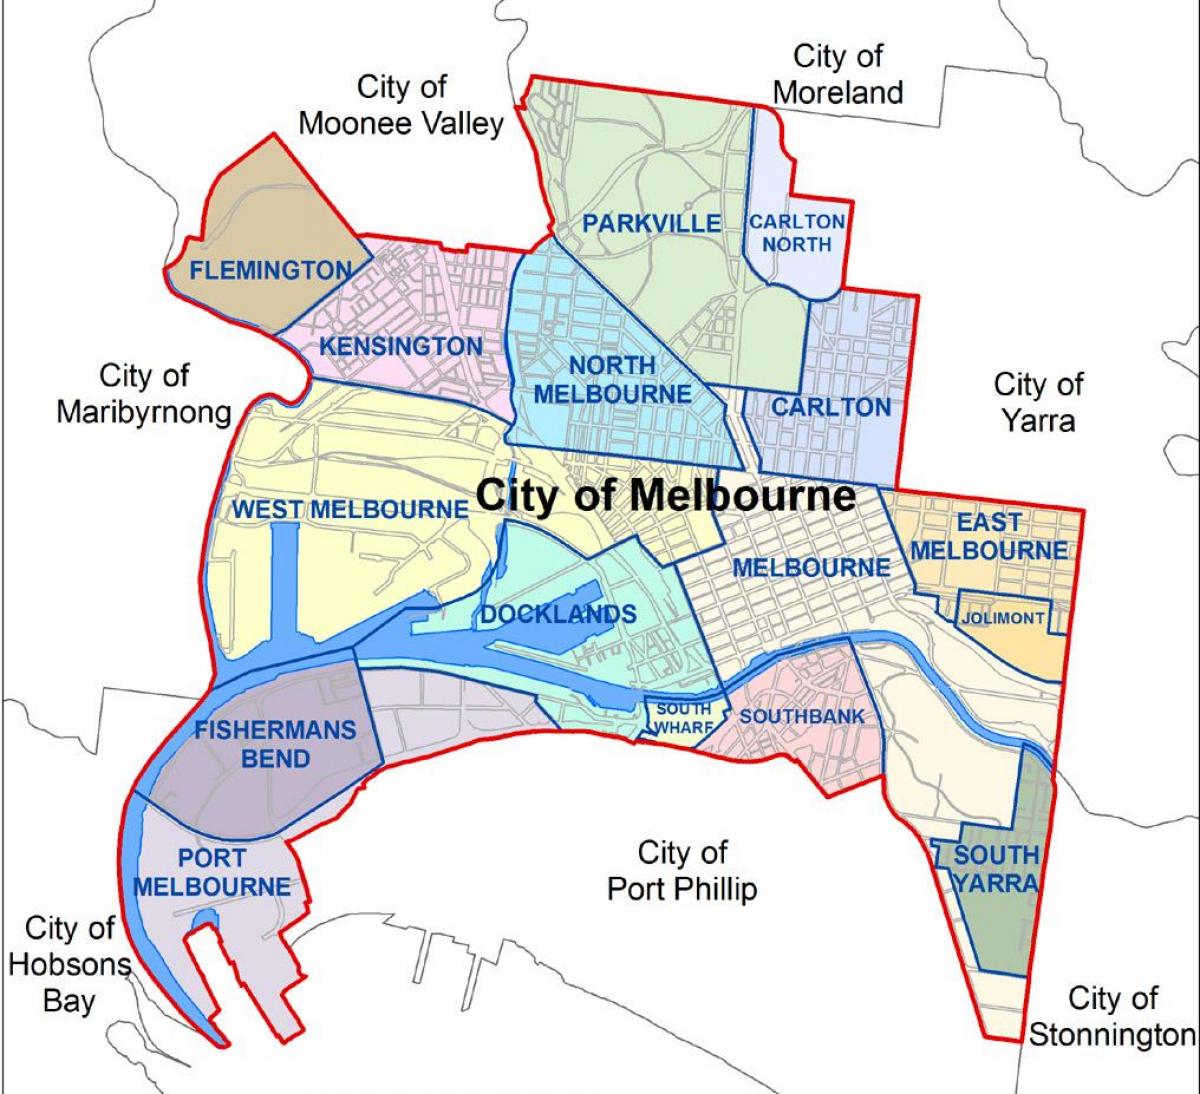 kort over Melbourne city